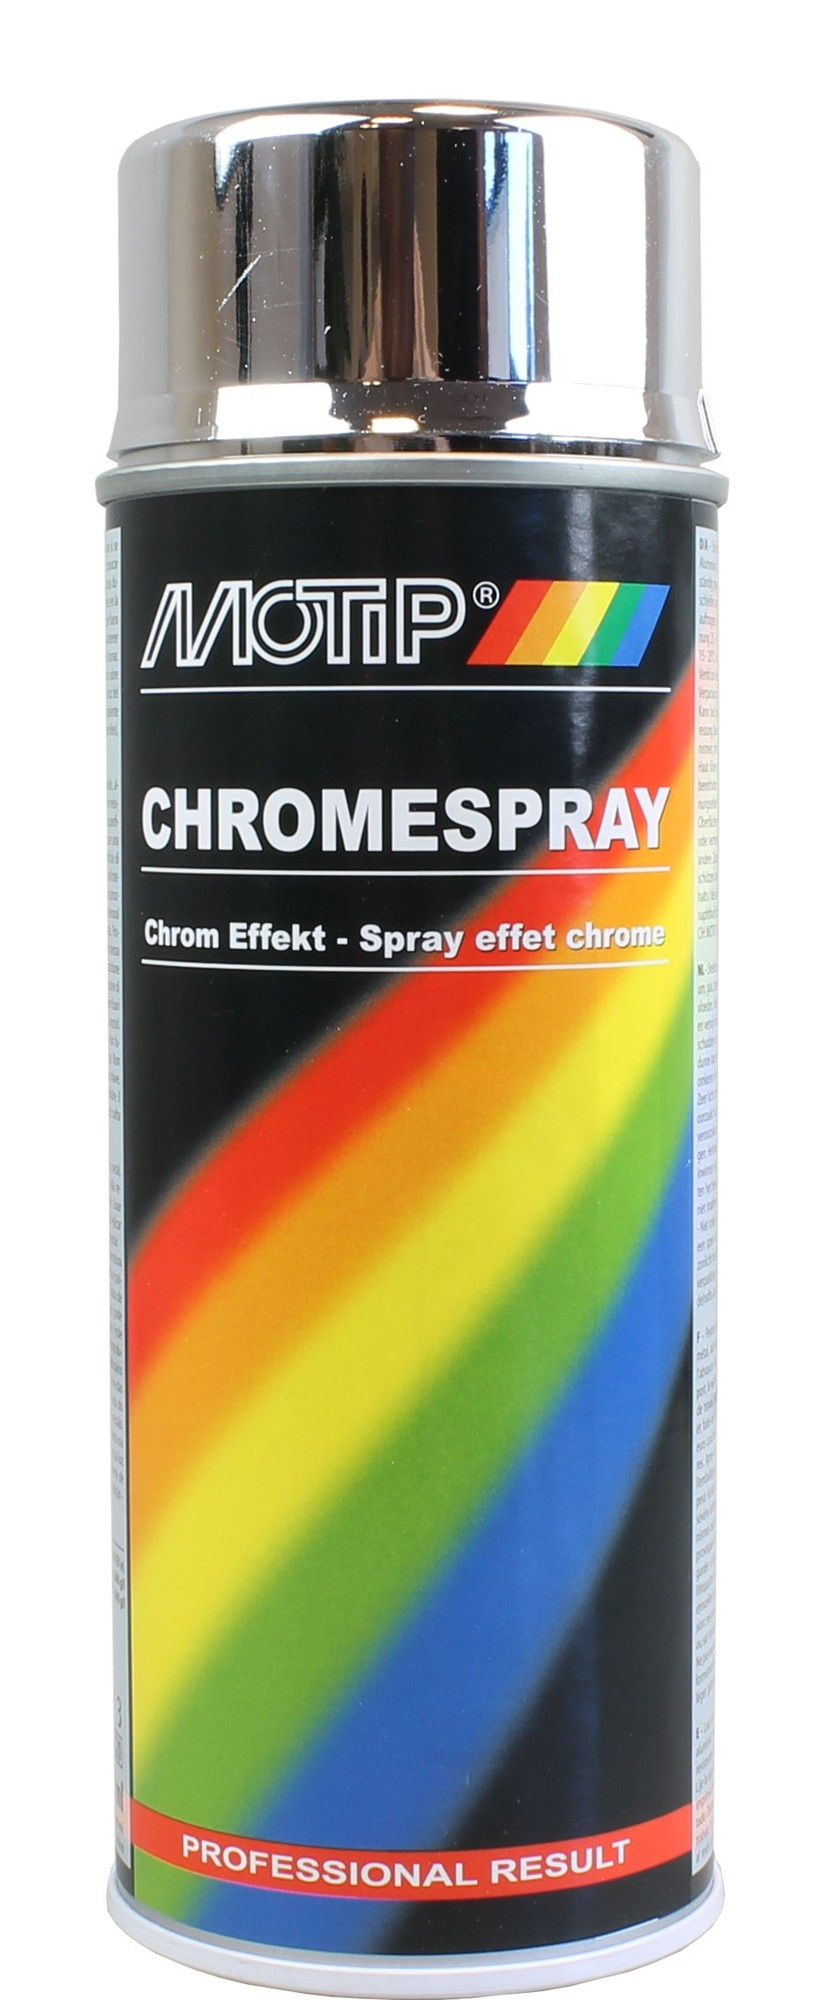 MoTip Chrome Spray in